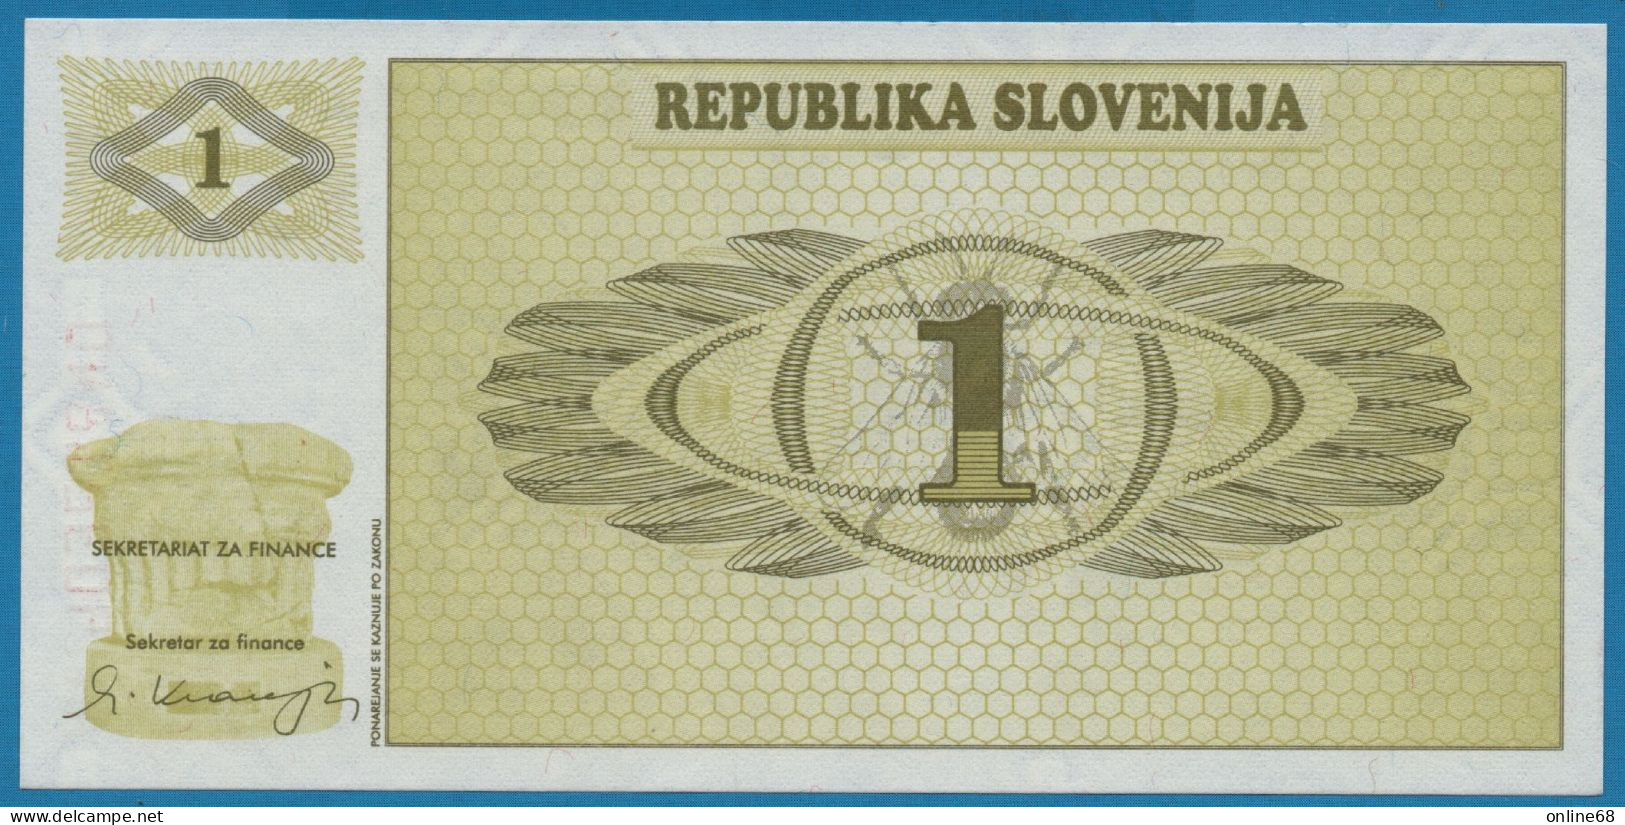 SLOVENIA 1 TOLAR 1990 # 90321840 P# 1 - Slovénie